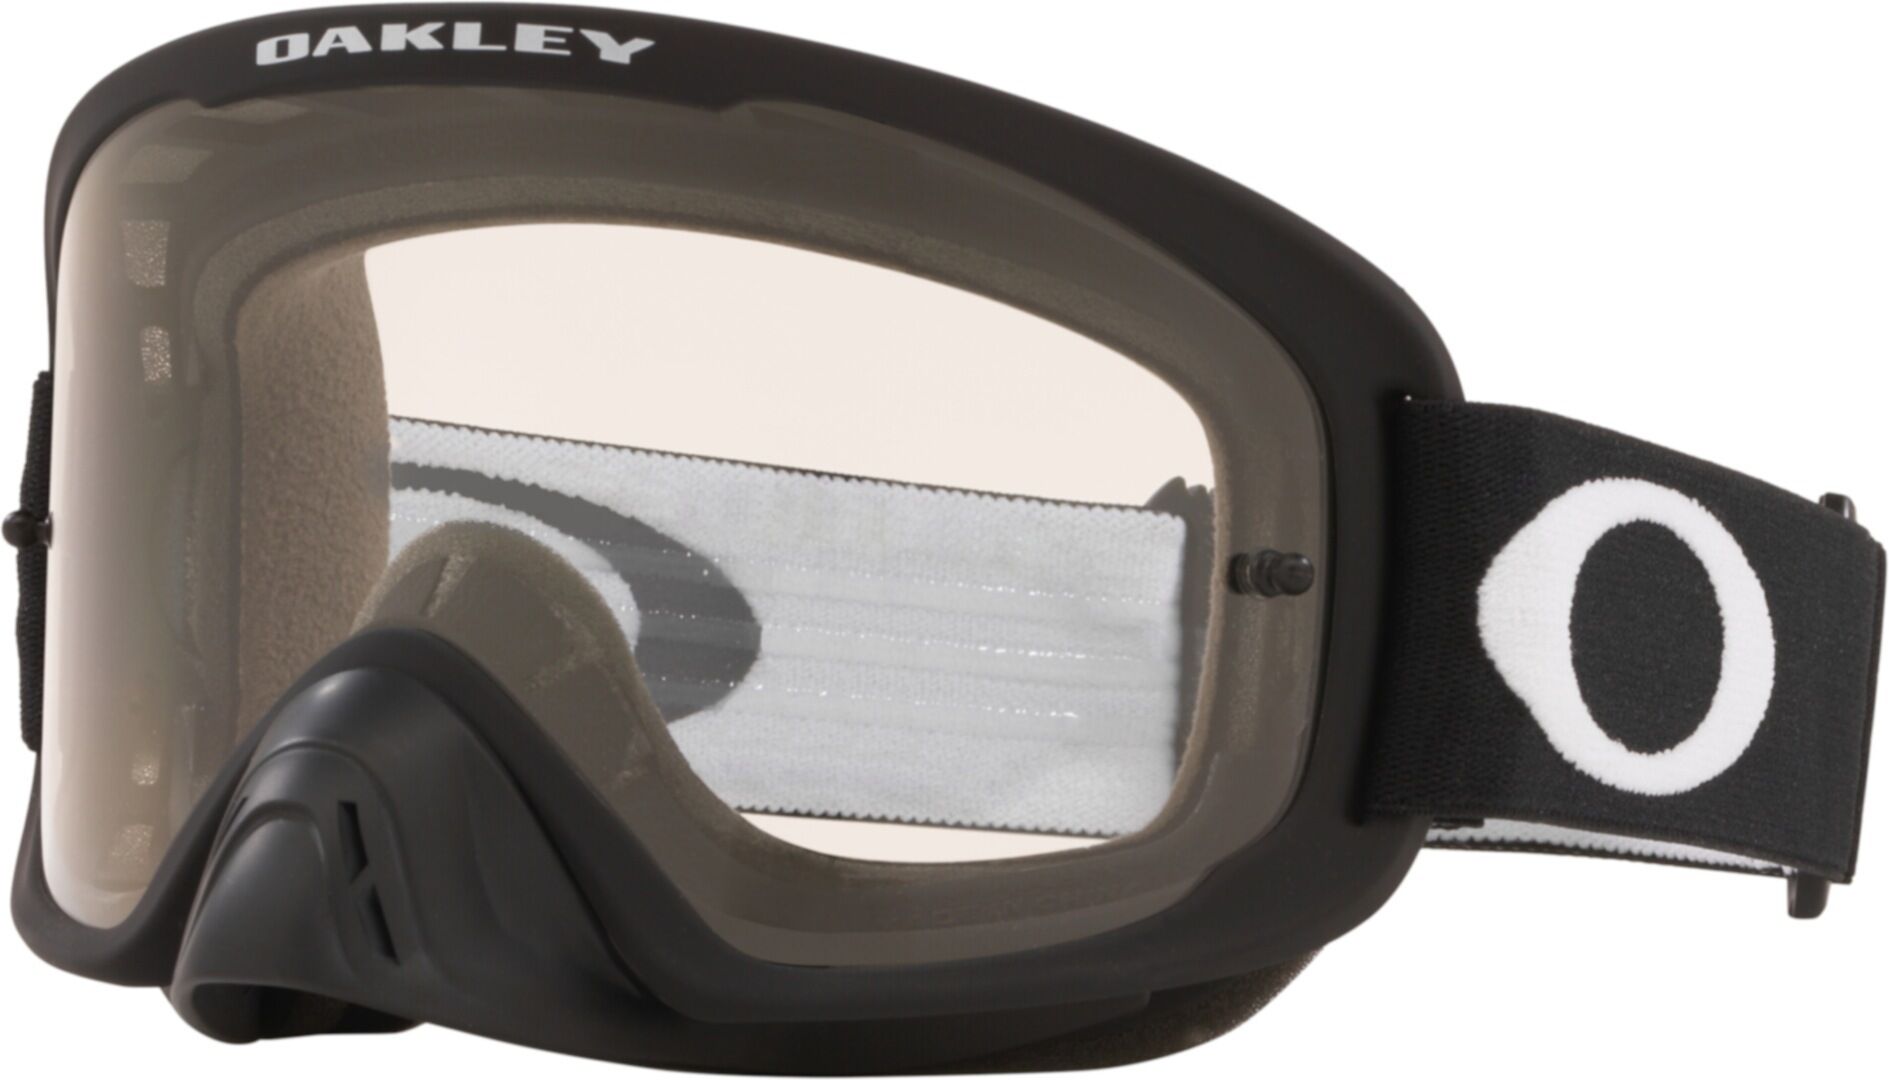 Oakley O-Frame 2.0 Pro Matte Gafas de Motocross - Negro (un tamaño)